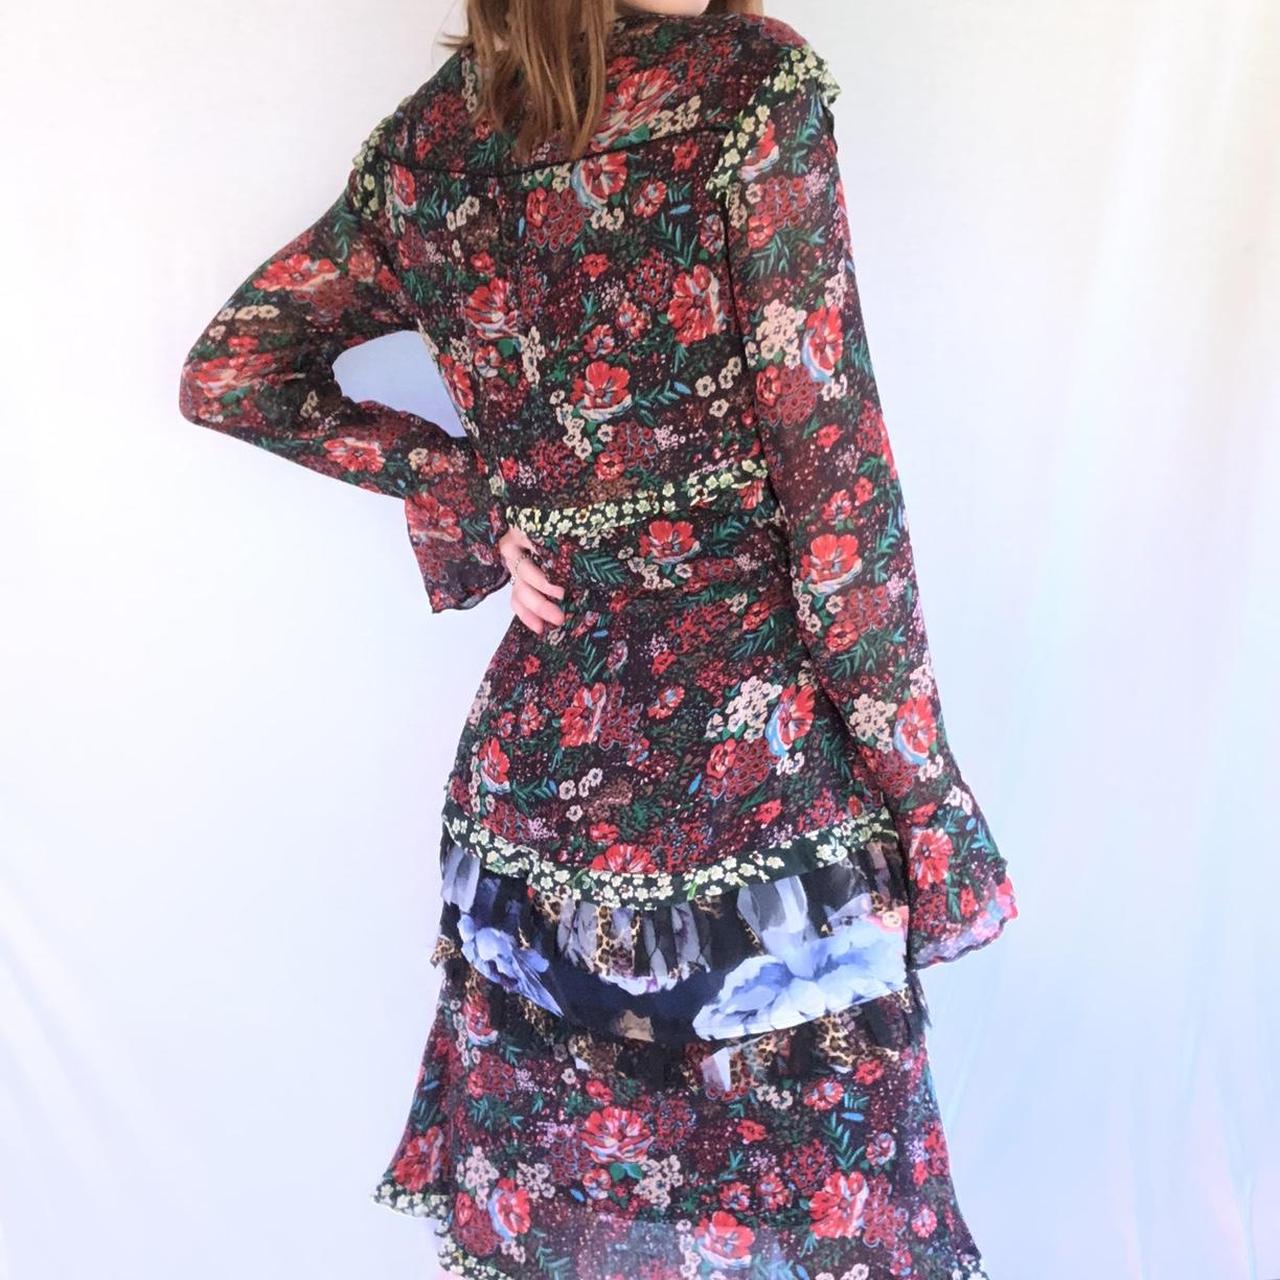 Product Image 3 - Beautiful multi-patterned layered chiffon dress.